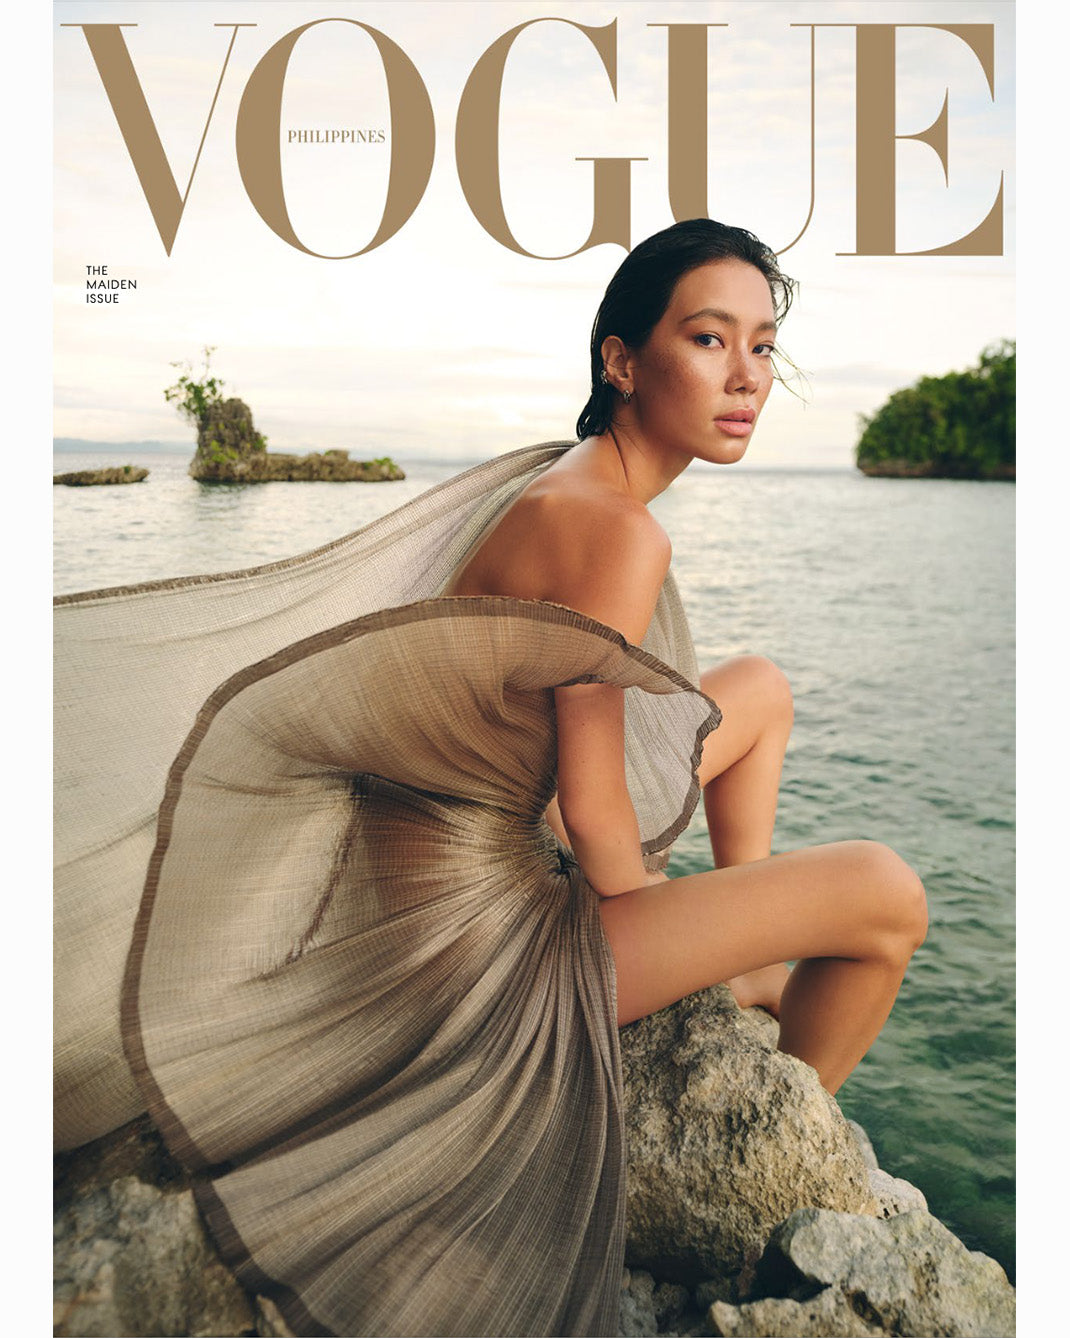 Vogue Philippines: Maiden Issue